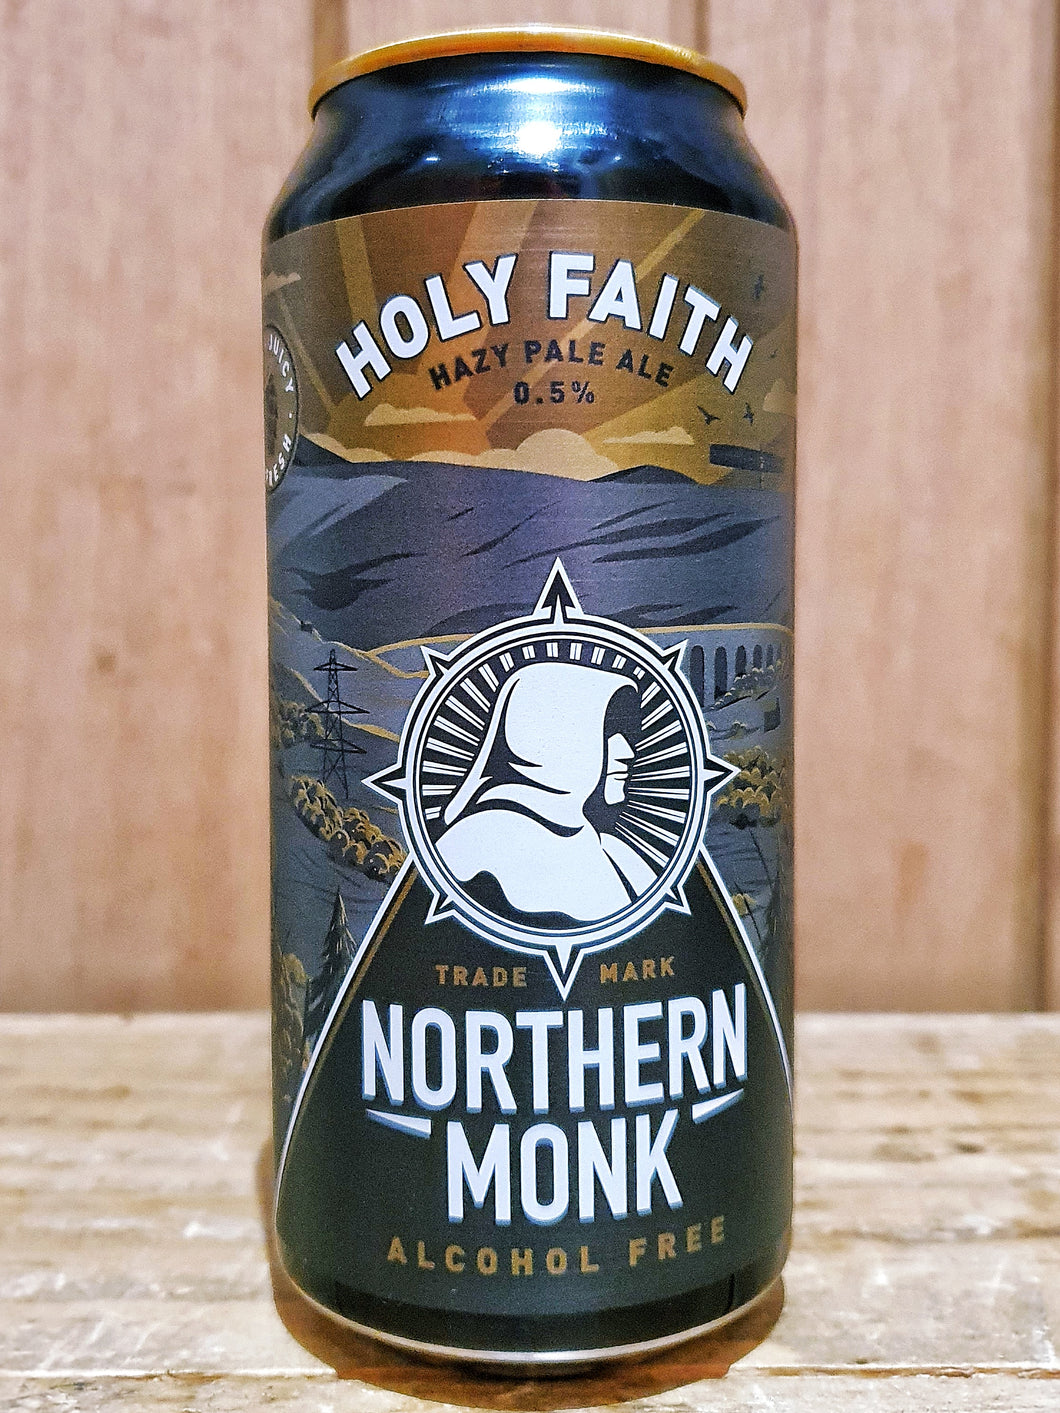 Northern Monk - Holy Faith